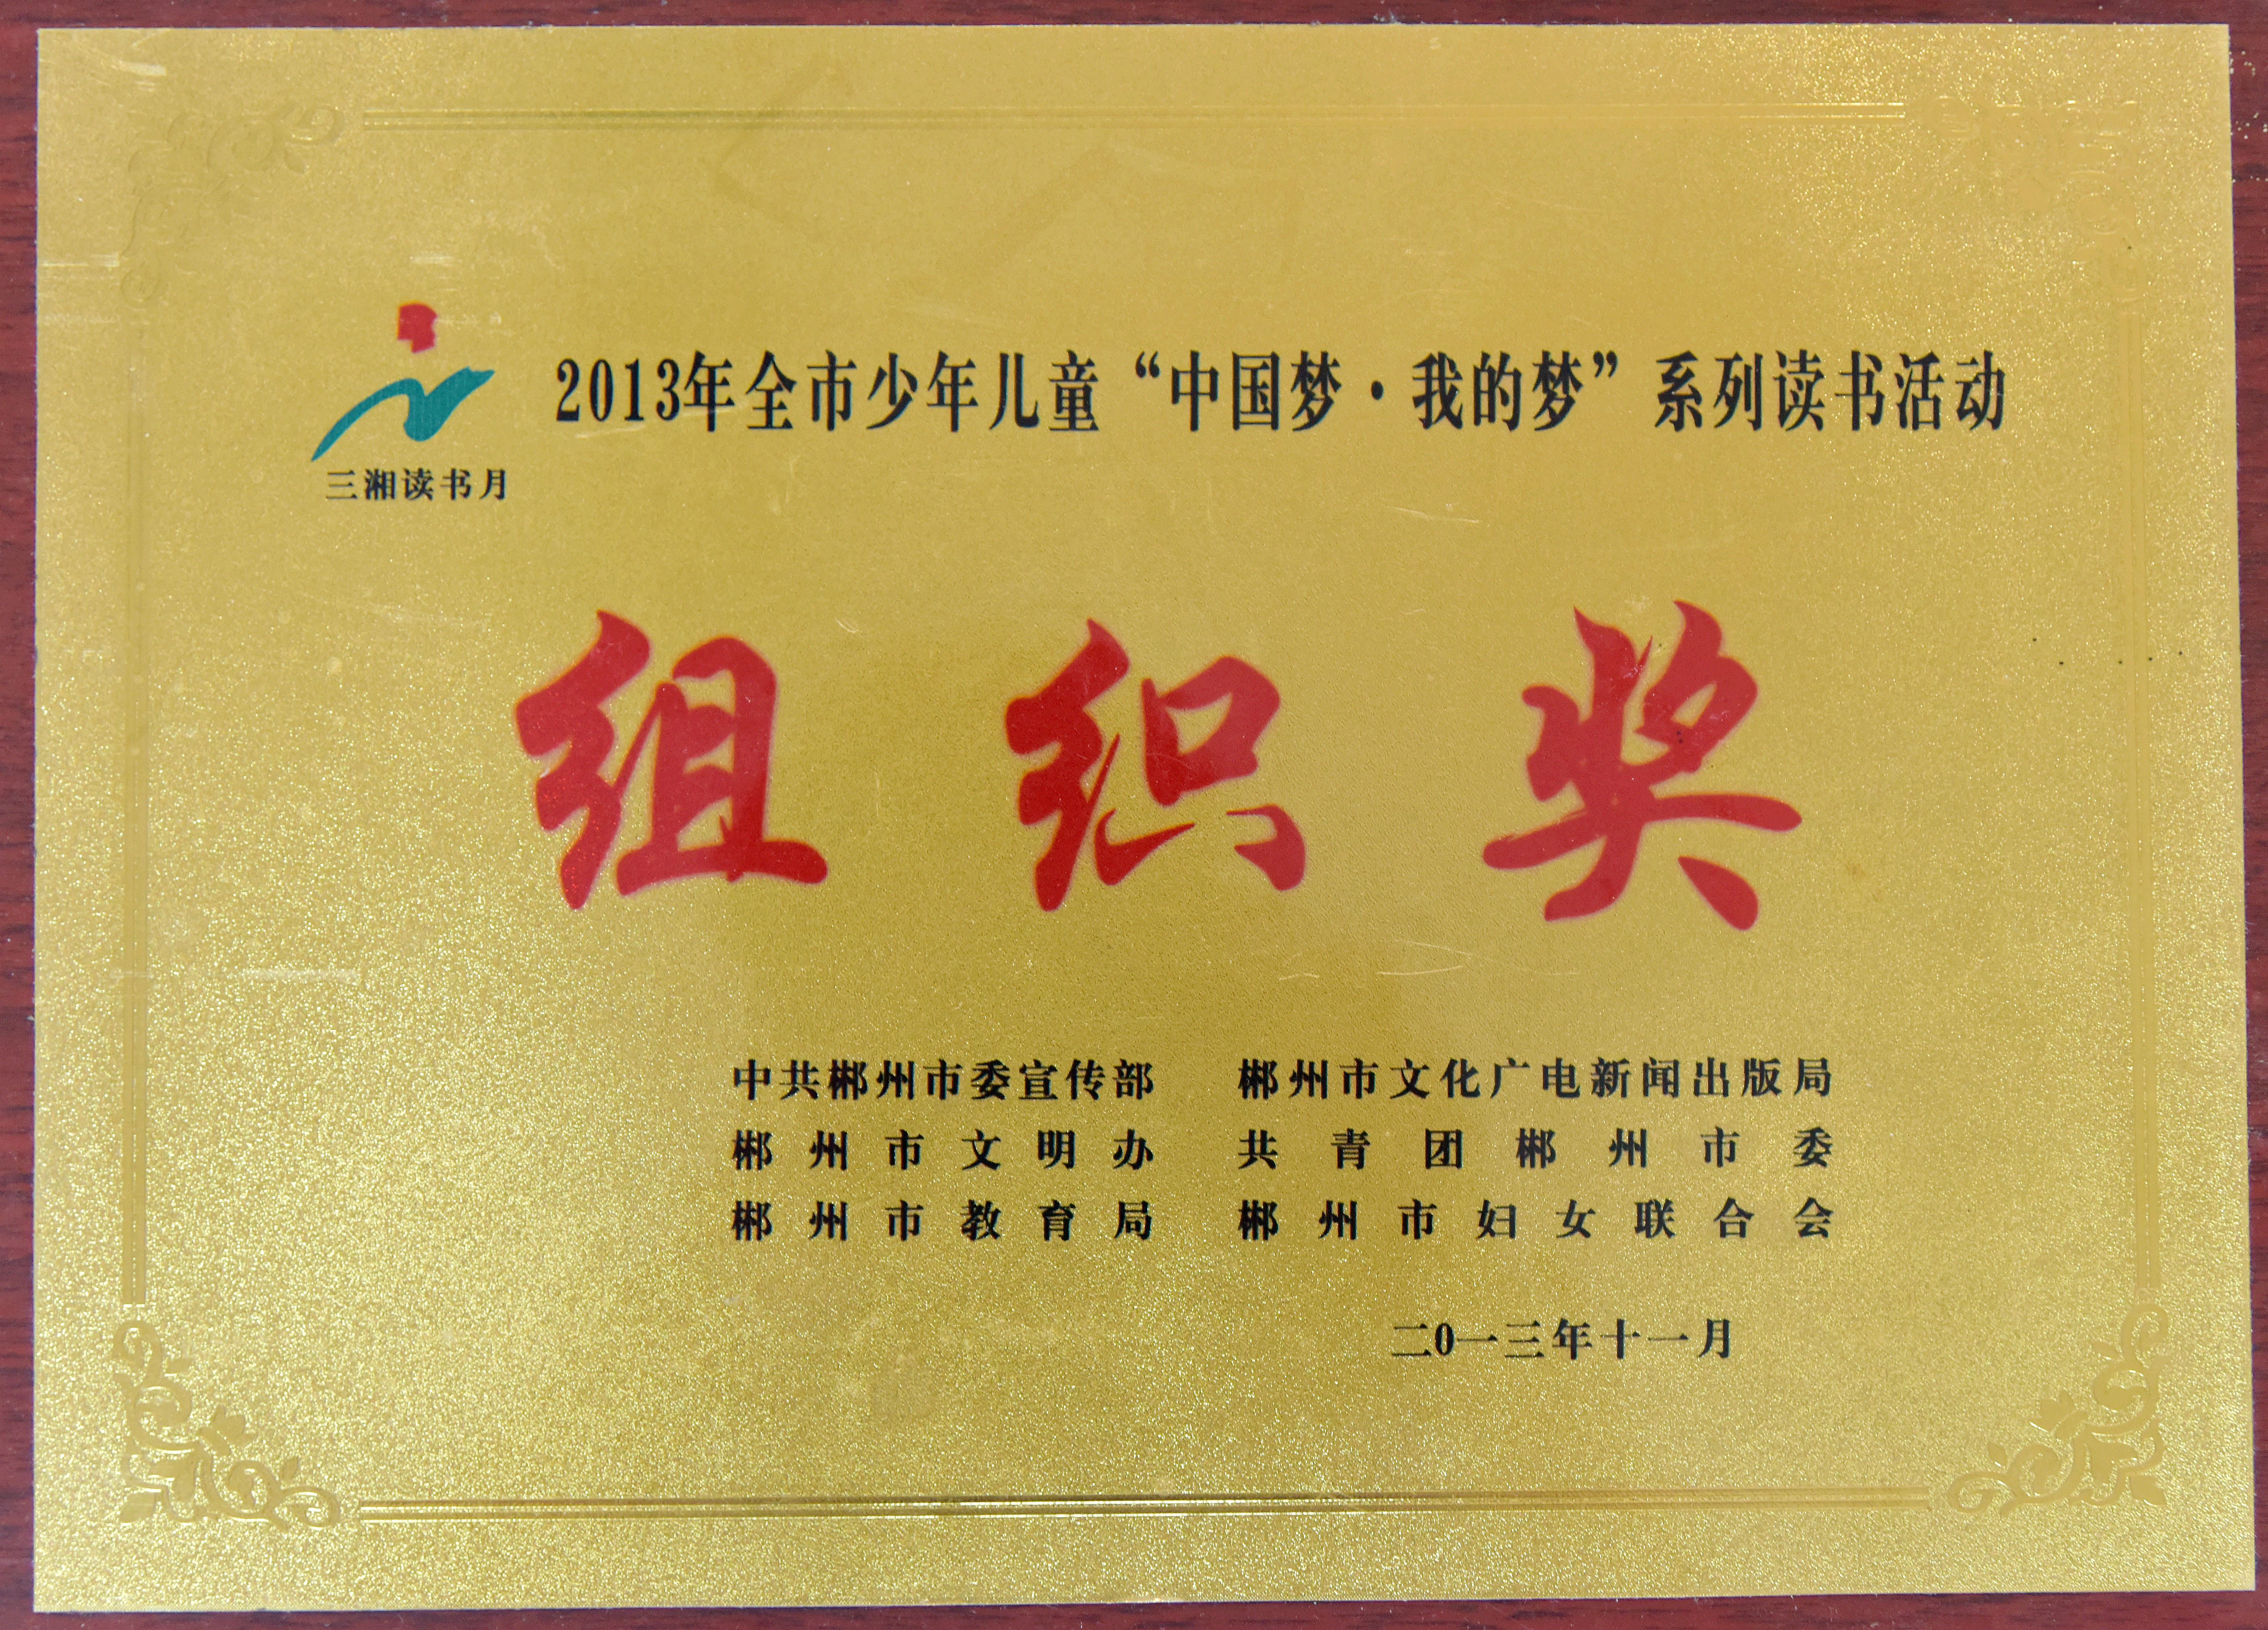 2013少年儿童“中国梦·我的梦”系列读书活动组织奖